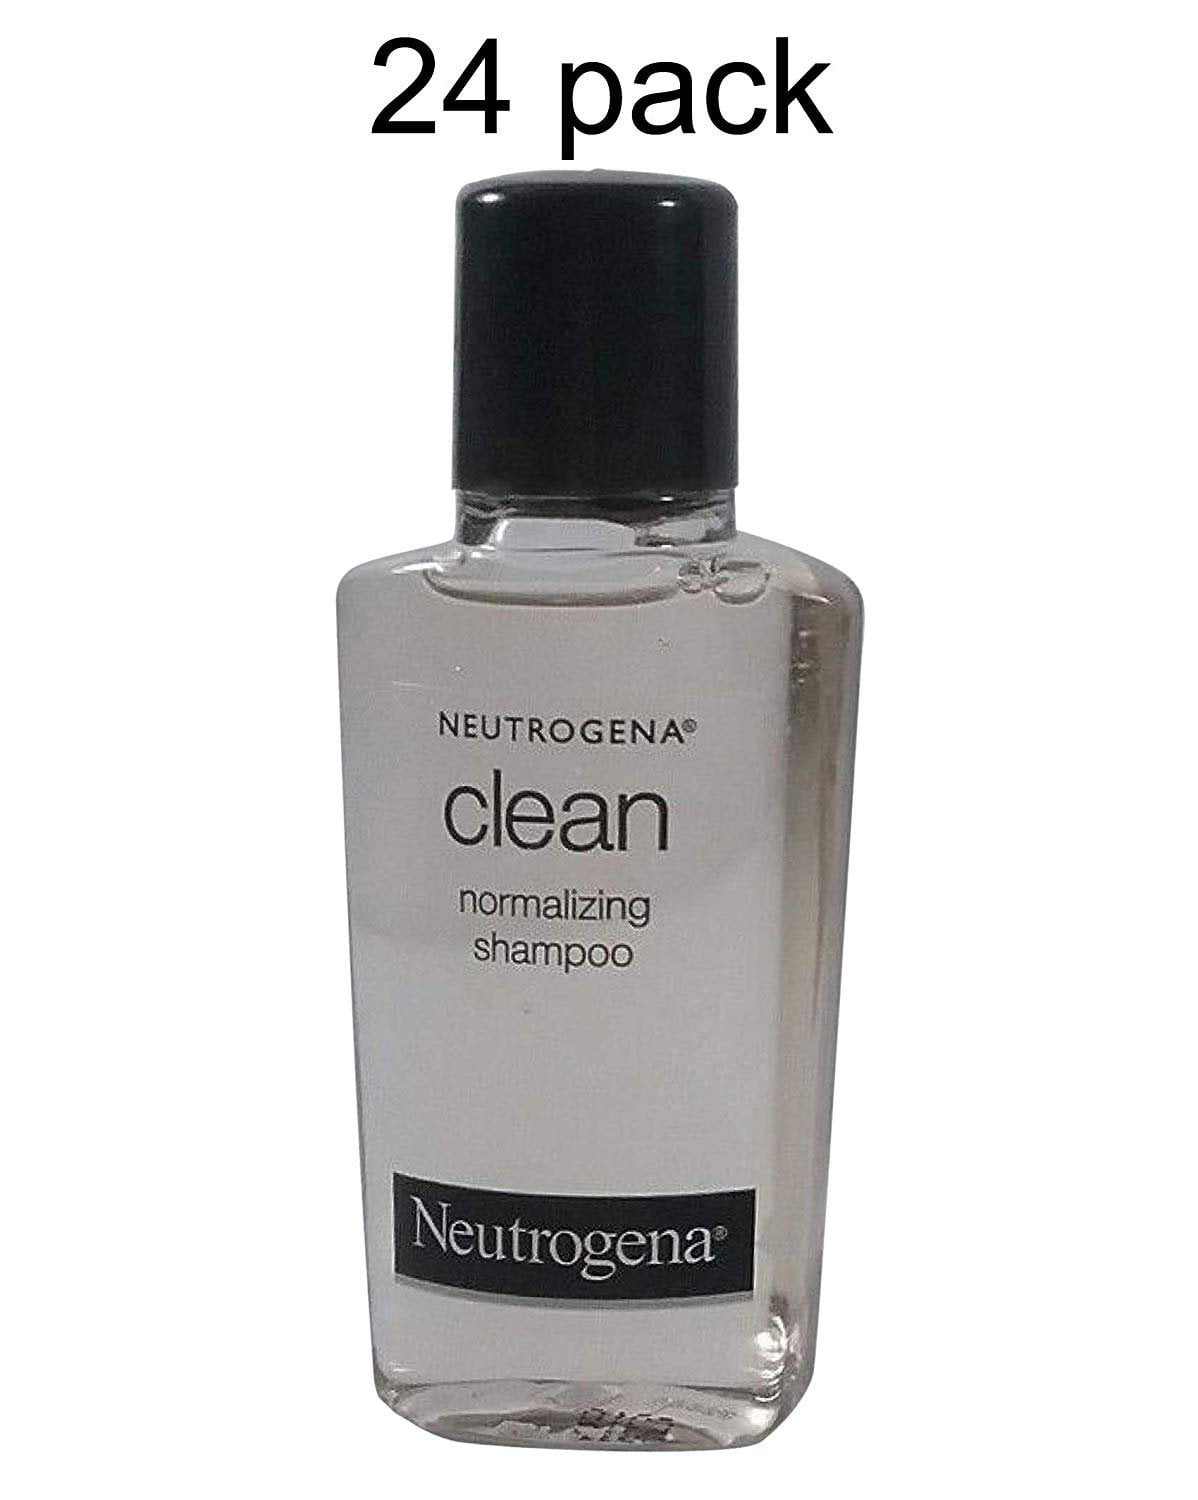 Neutrogena shampoo for oily hair